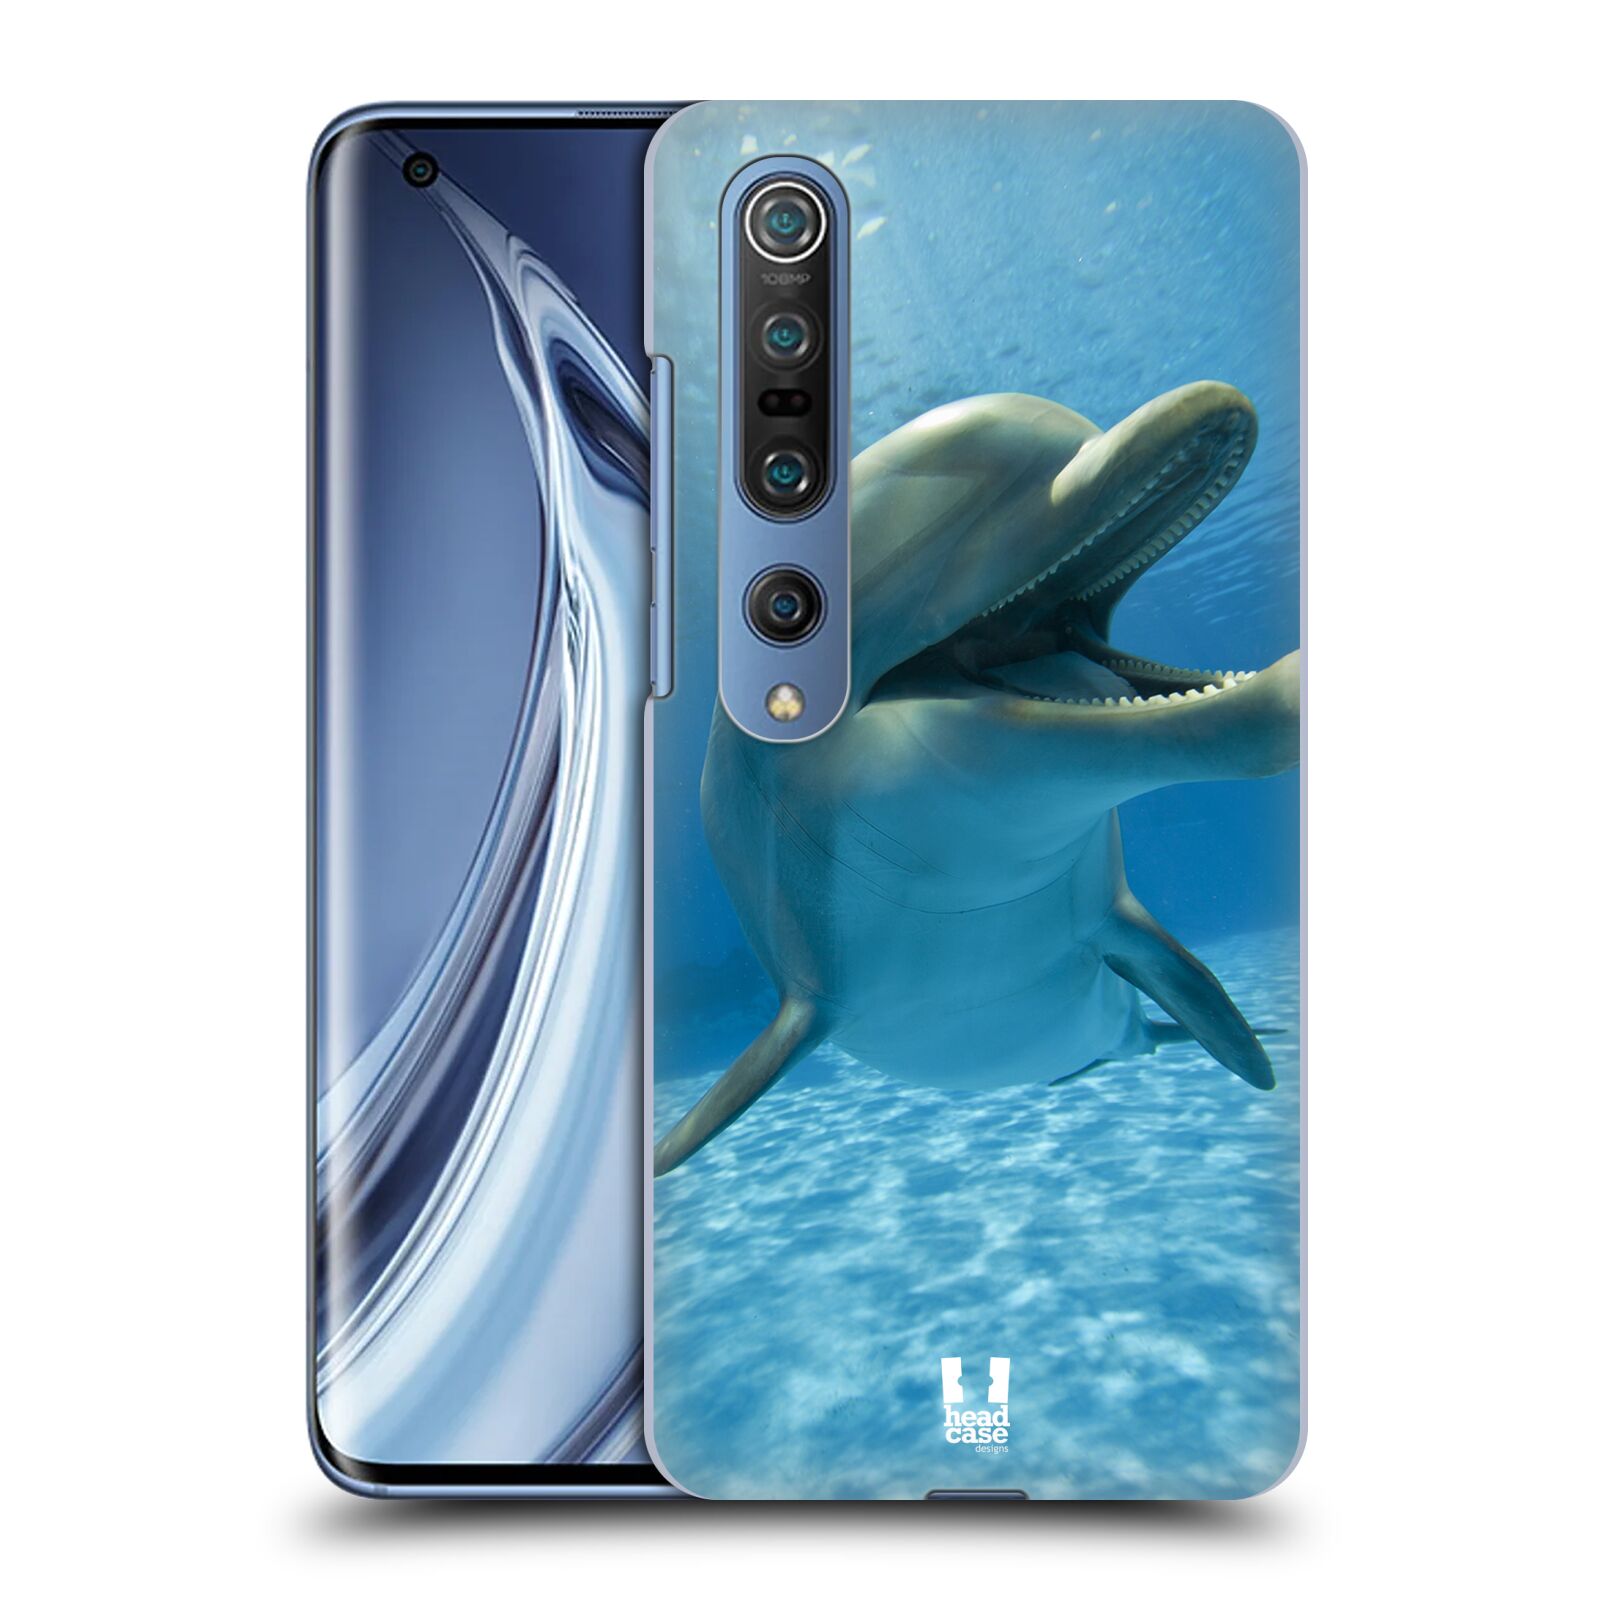 Zadní obal pro mobil Xiaomi Mi 10 / Mi 10 Pro - HEAD CASE - Svět zvířat delfín v moři